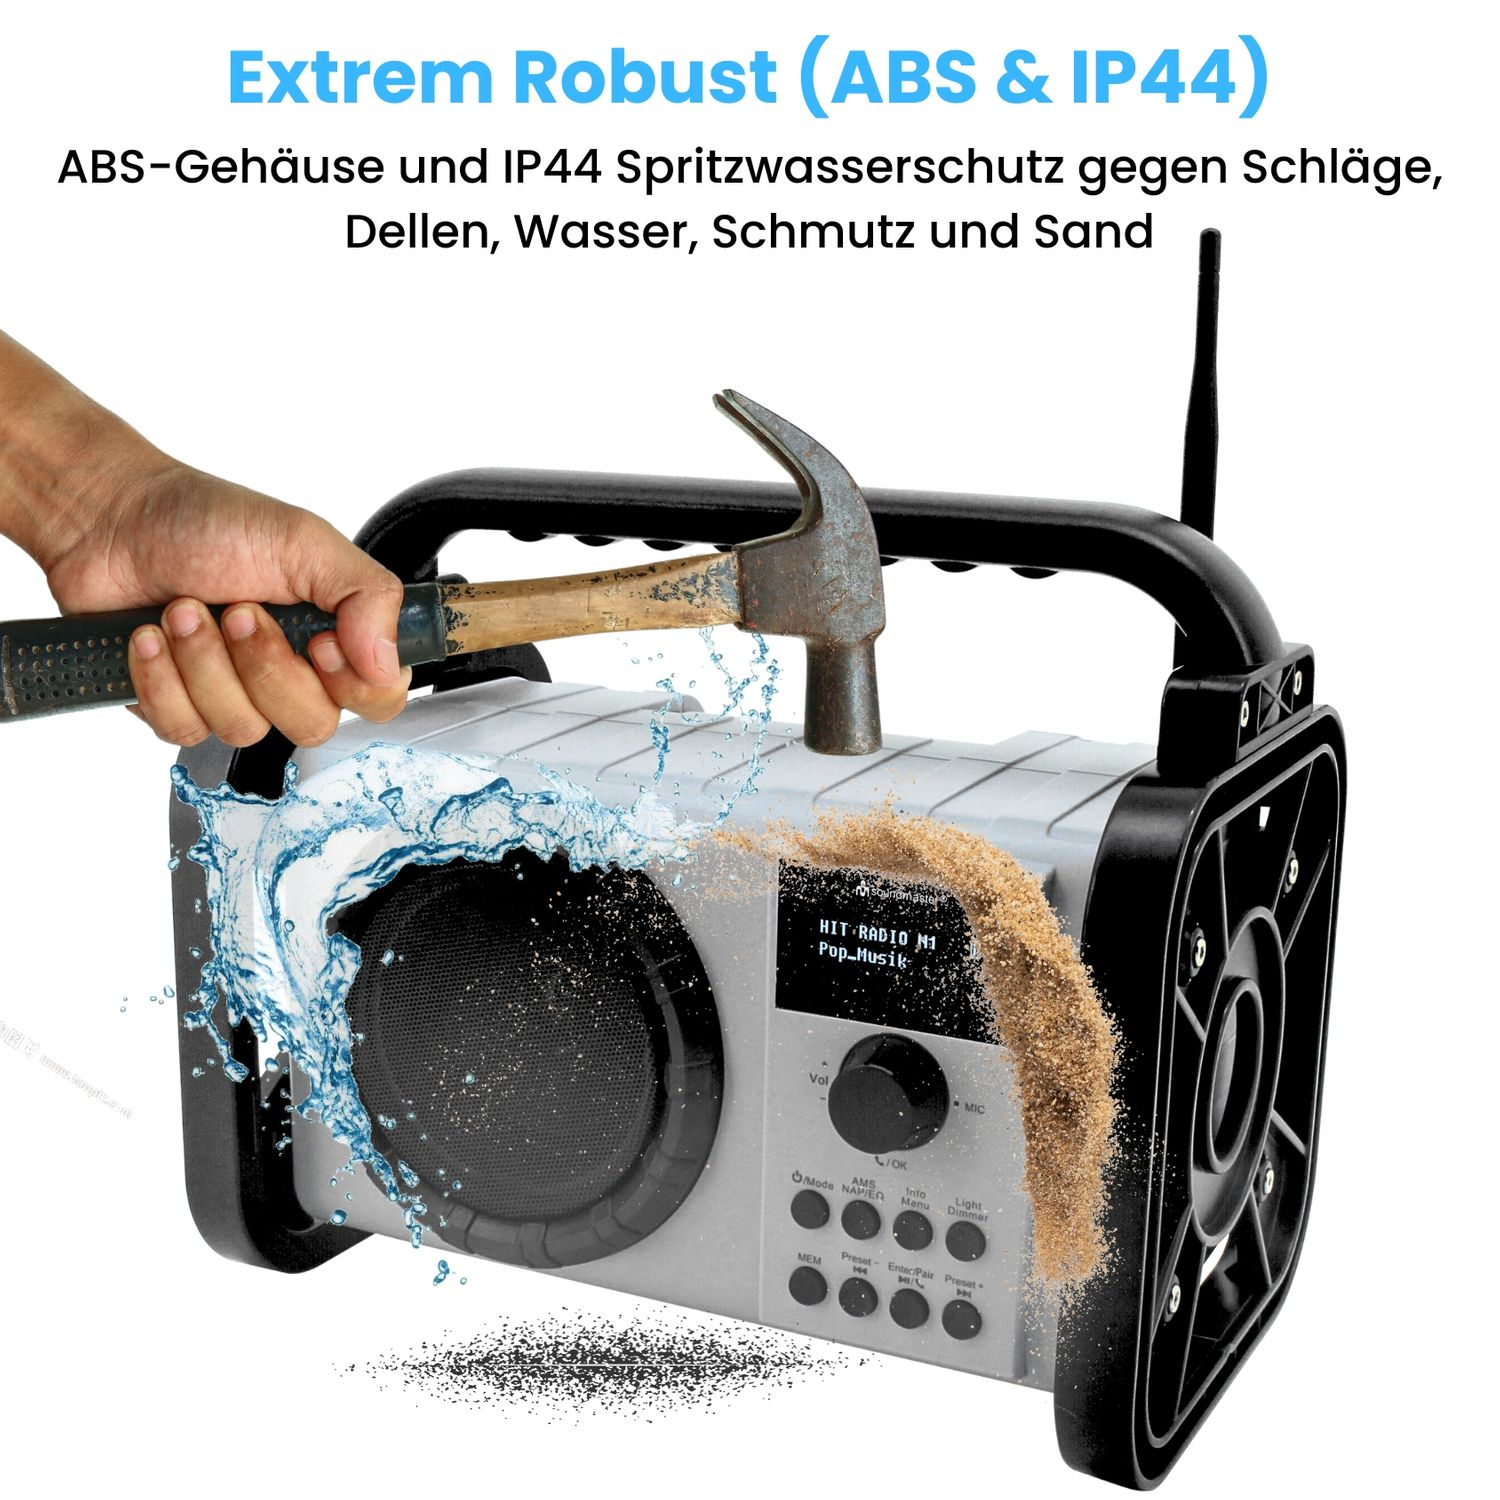 Silbergrau Bluetooth, DAB80SG FM, AM, DAB+, SOUNDMASTER Baustellenradio,